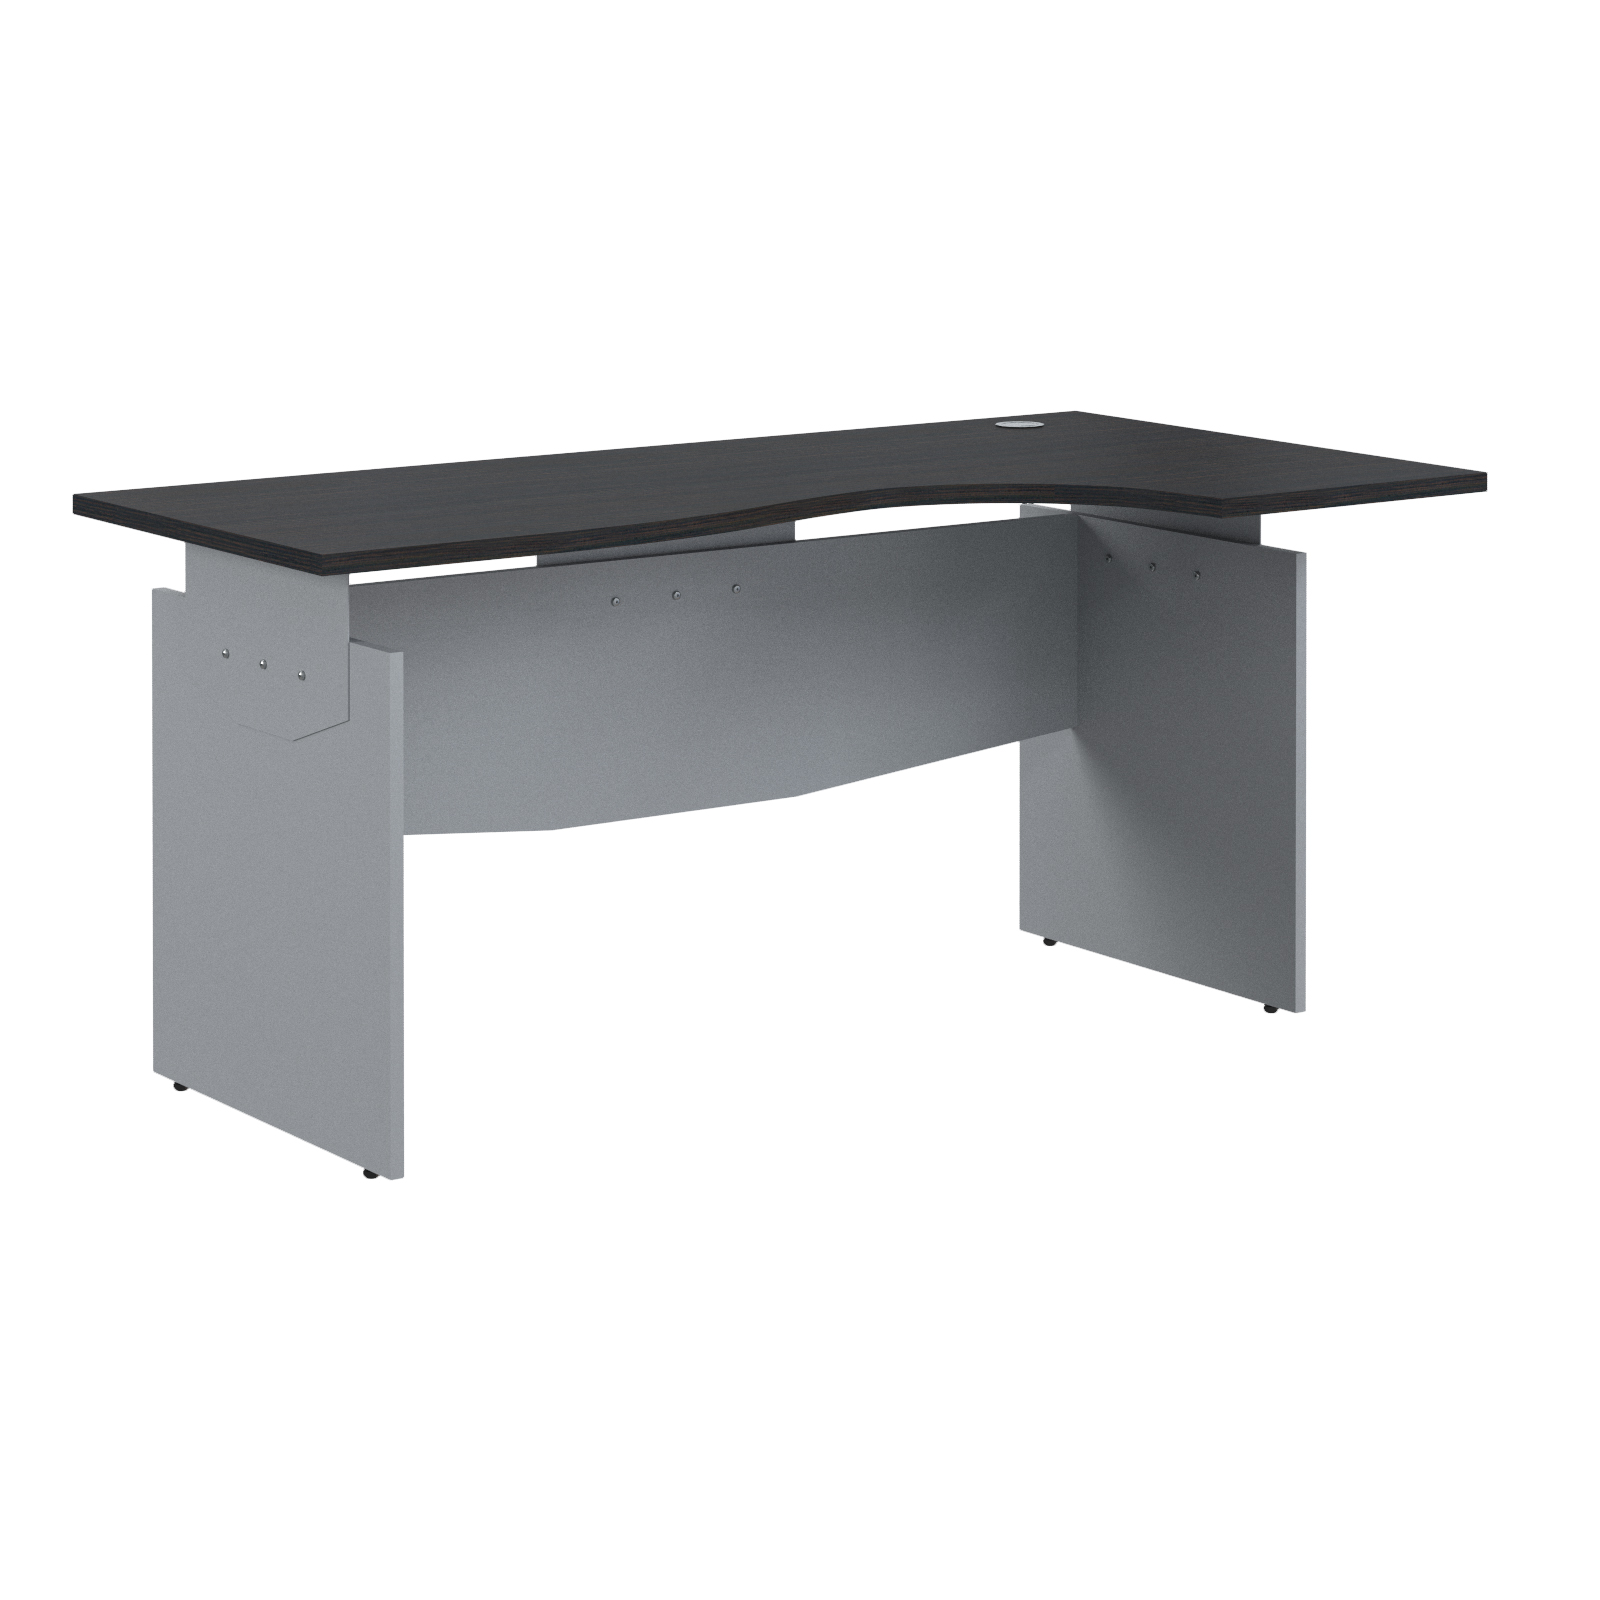 Offix new стол эргономичный 160R